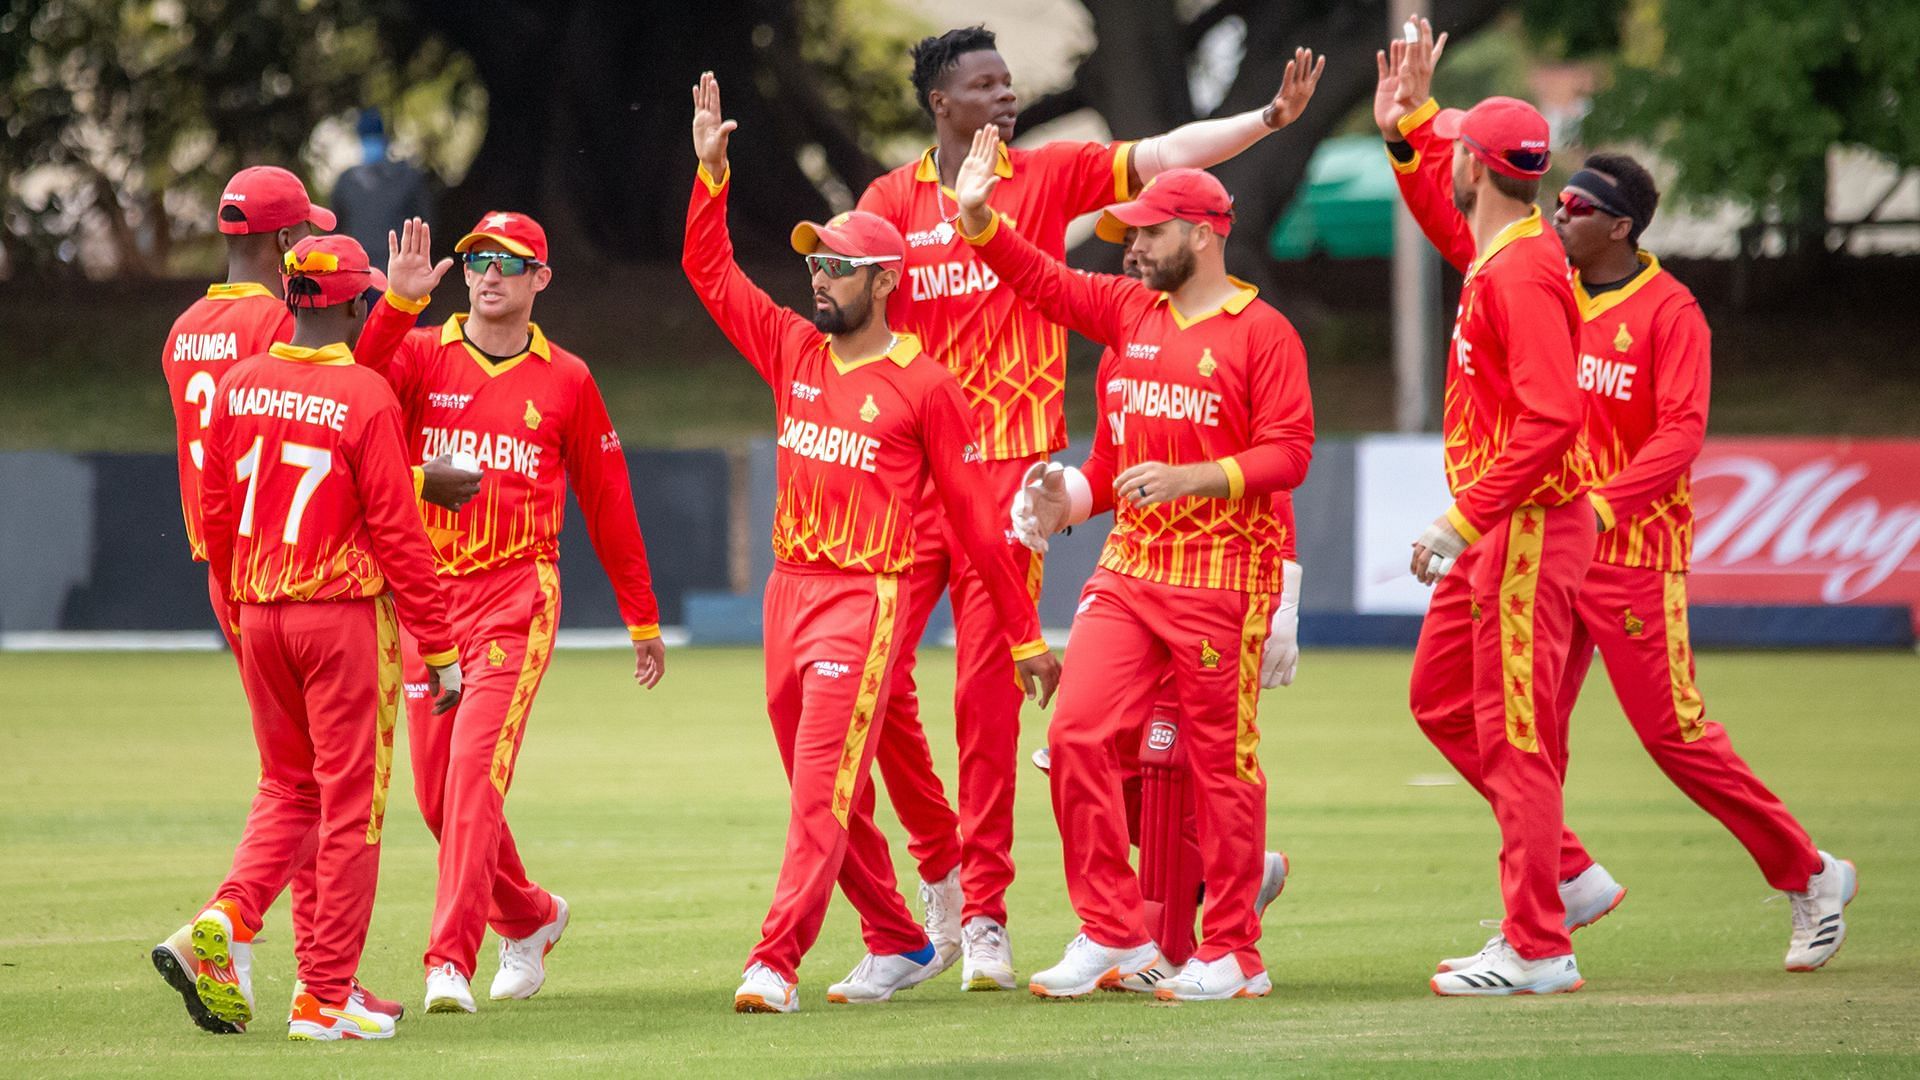 Zimbabwe cricket team in action (Image Courtesy: ICC Cricket)